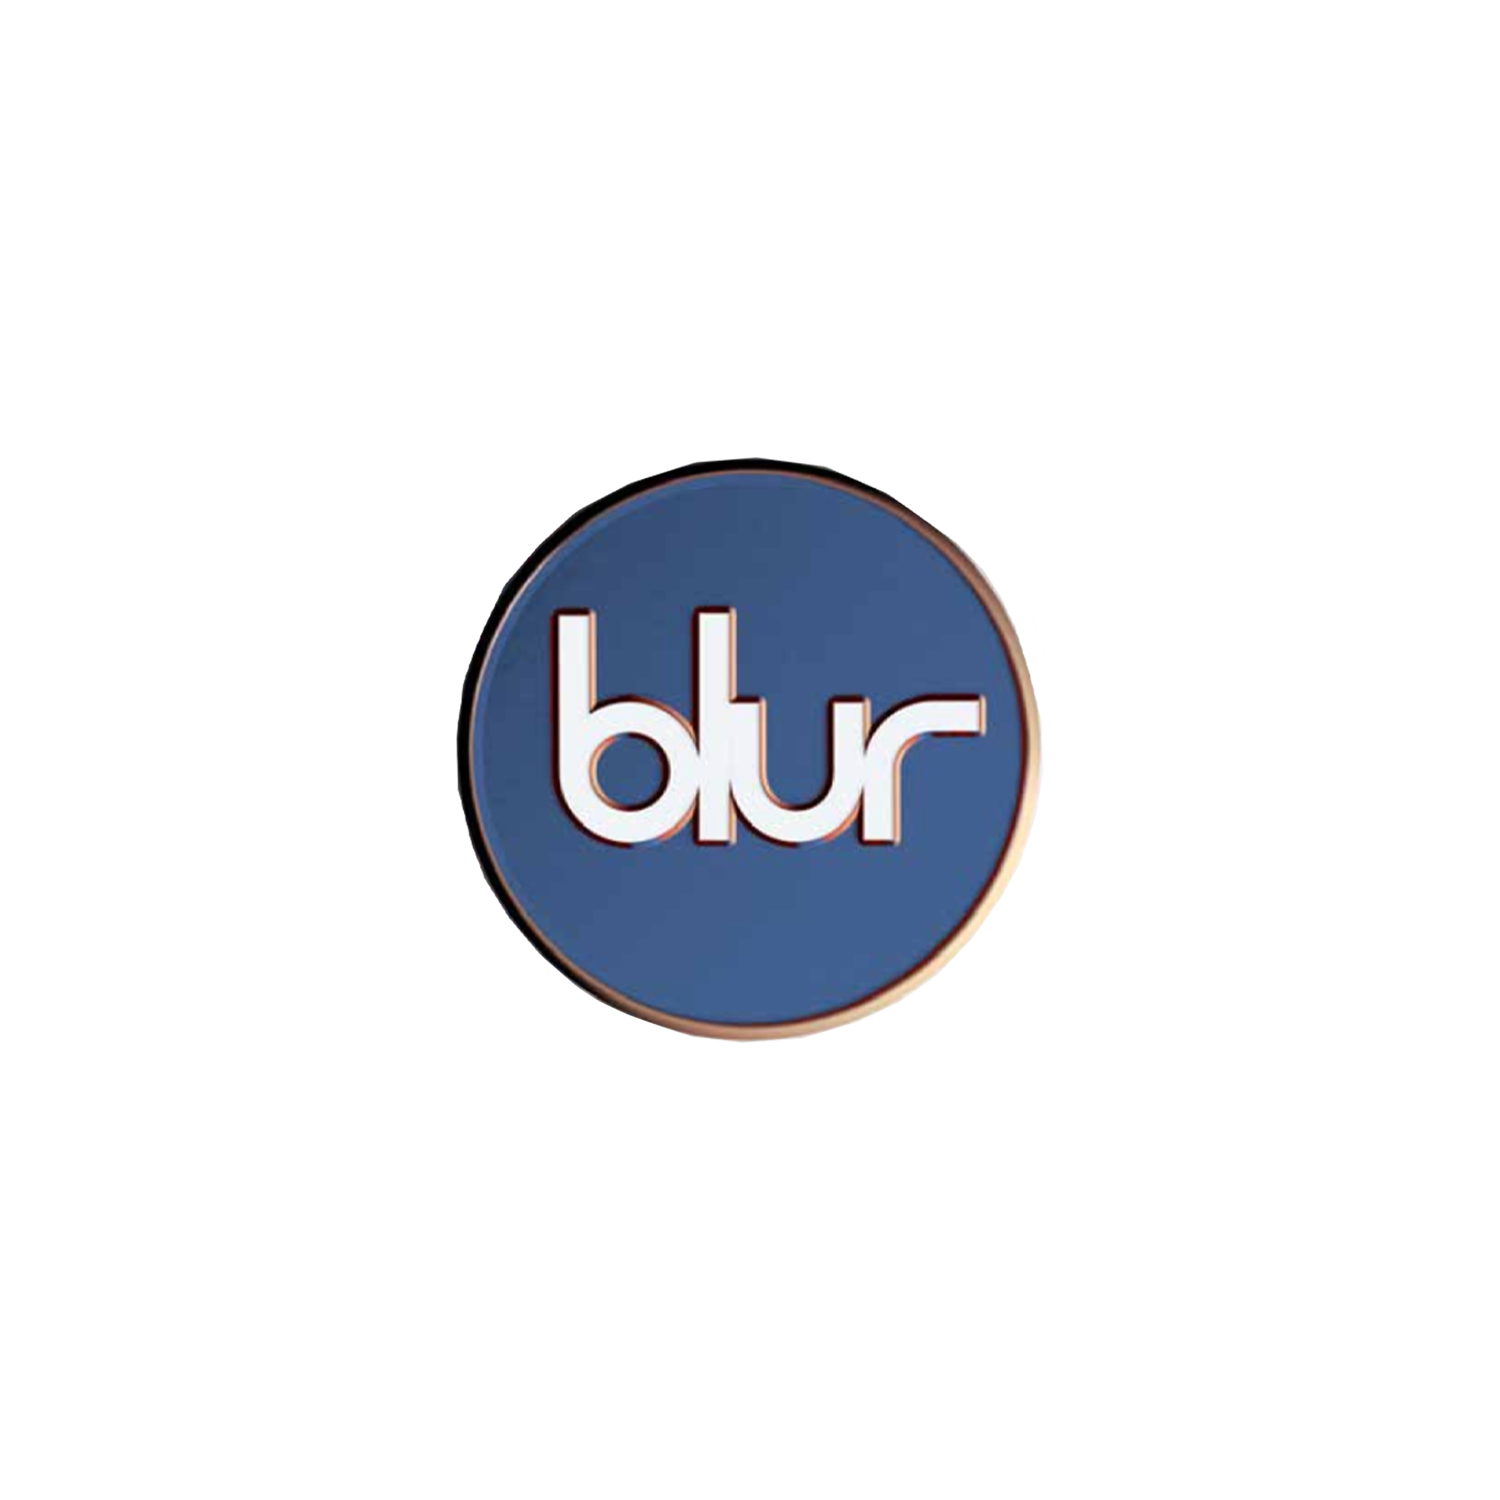 Rainbow Blur logo by tripus on DeviantArt